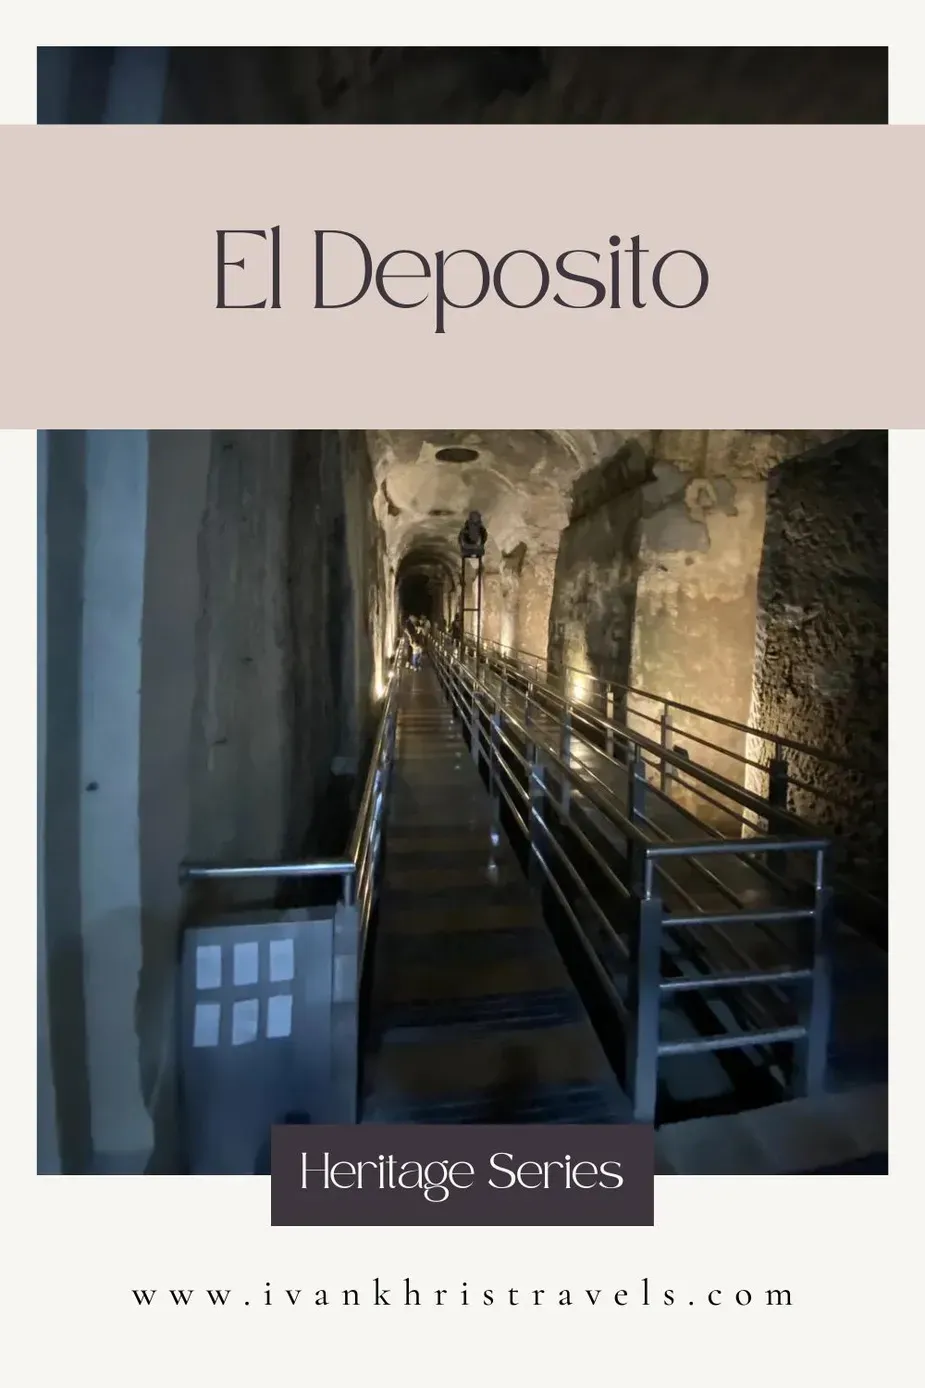 El Deposito travel guide